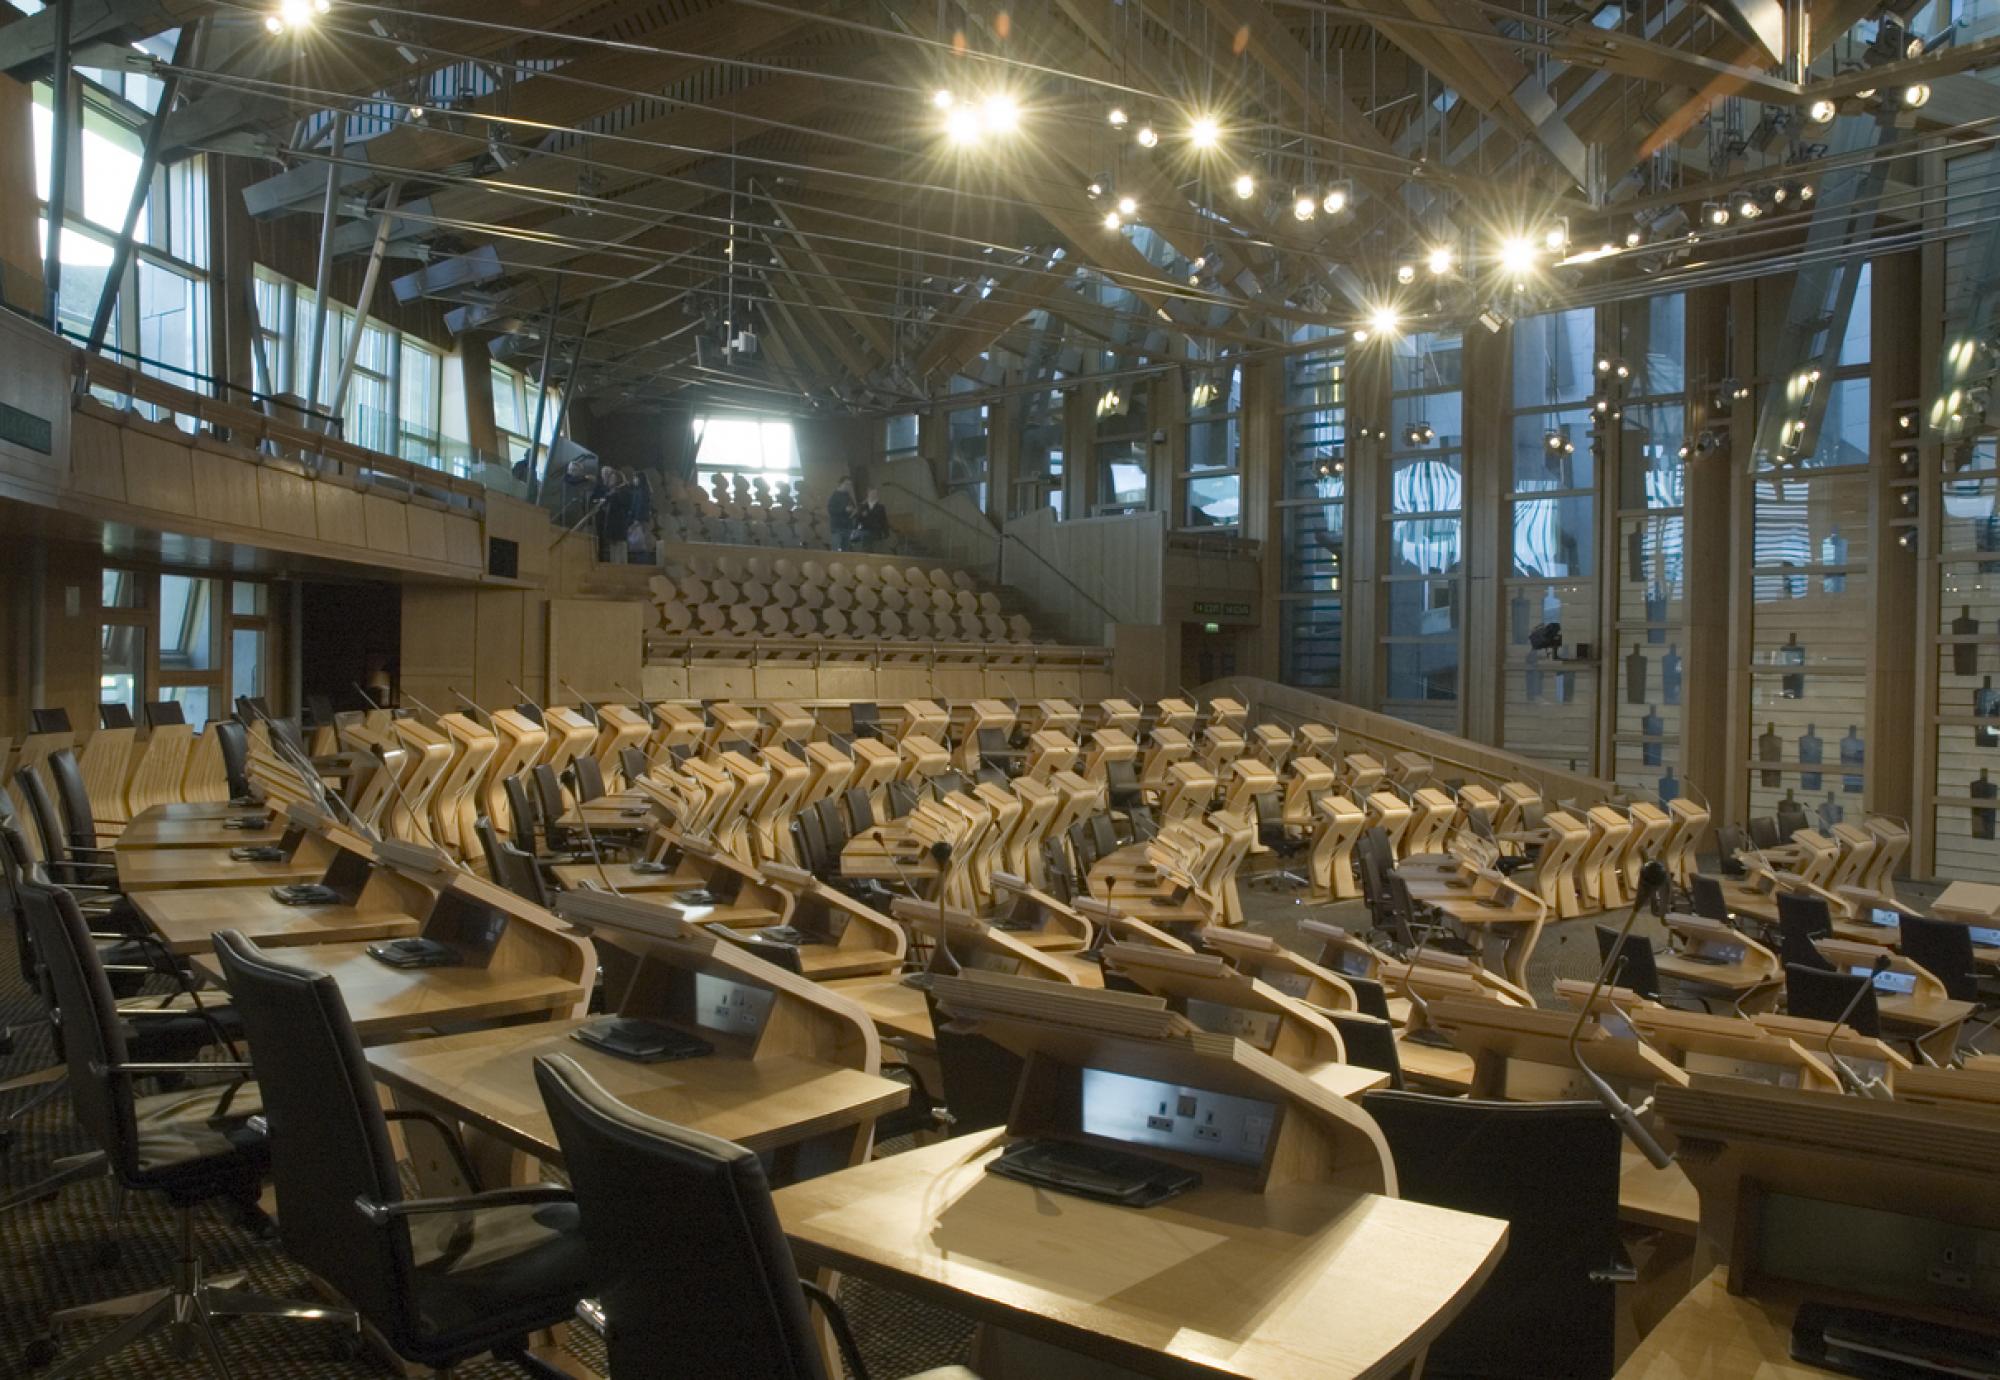 Scottish Parliament chamber